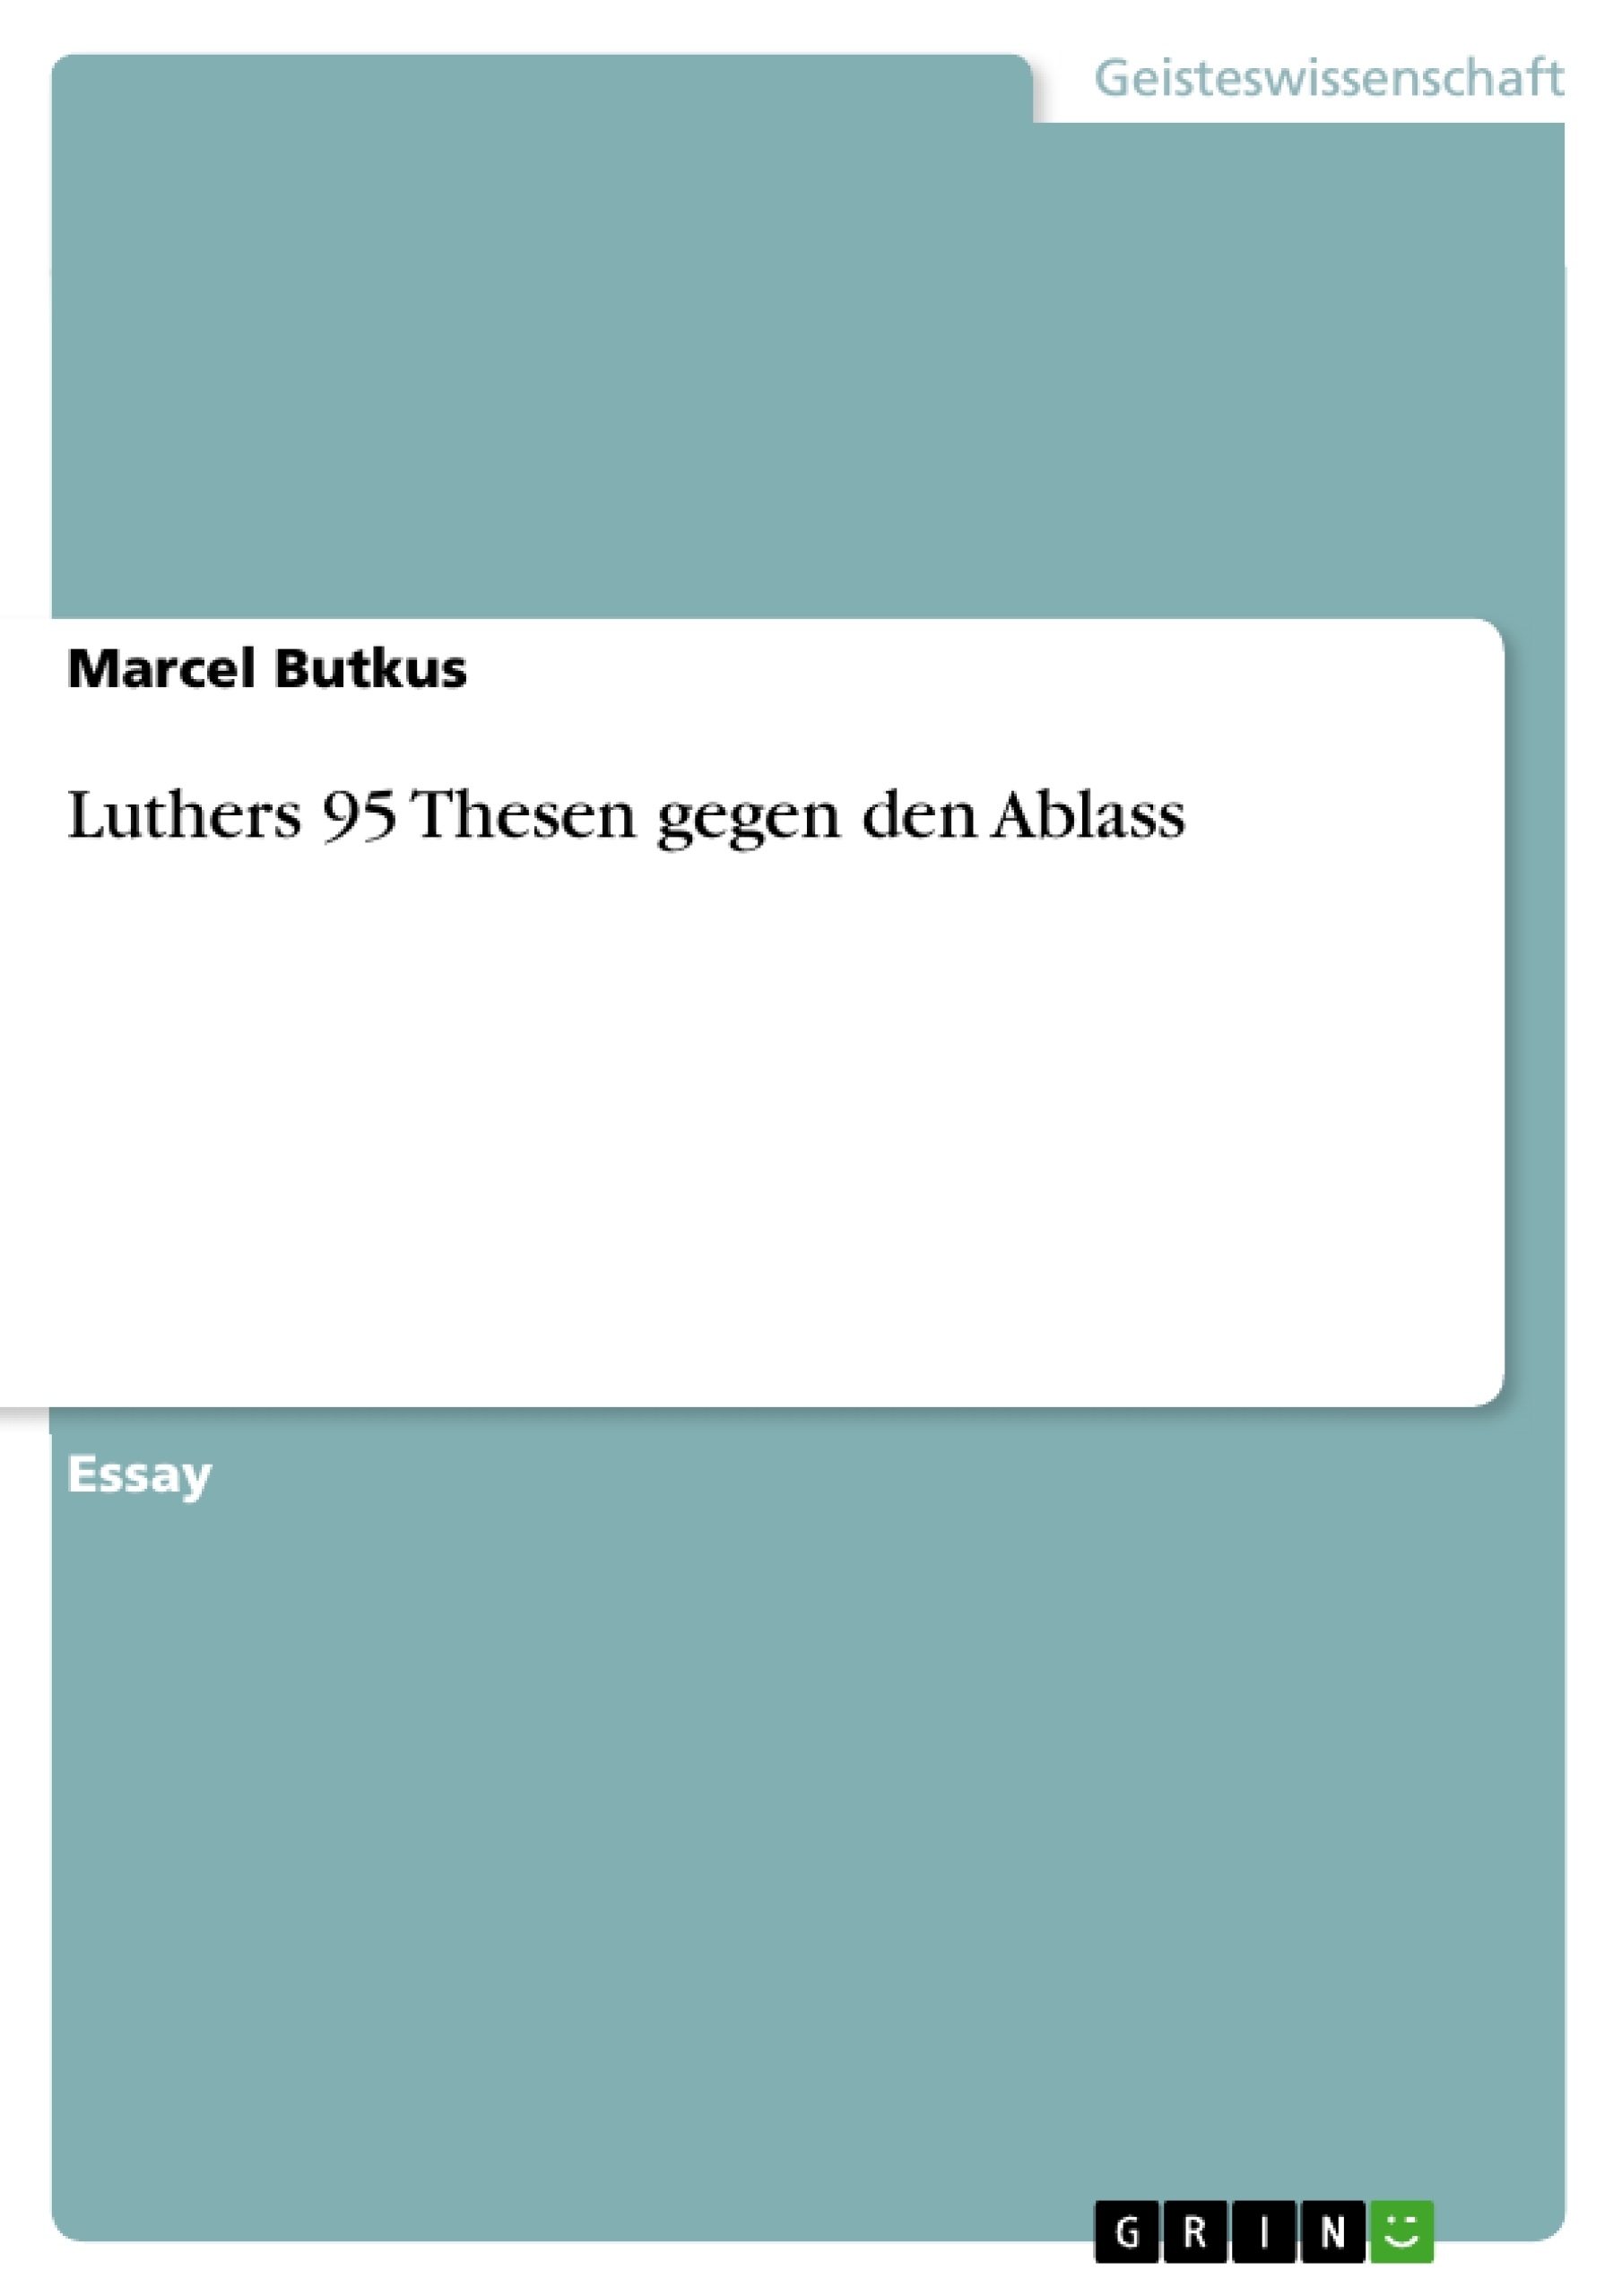 Titre: Luthers 95 Thesen gegen den Ablass